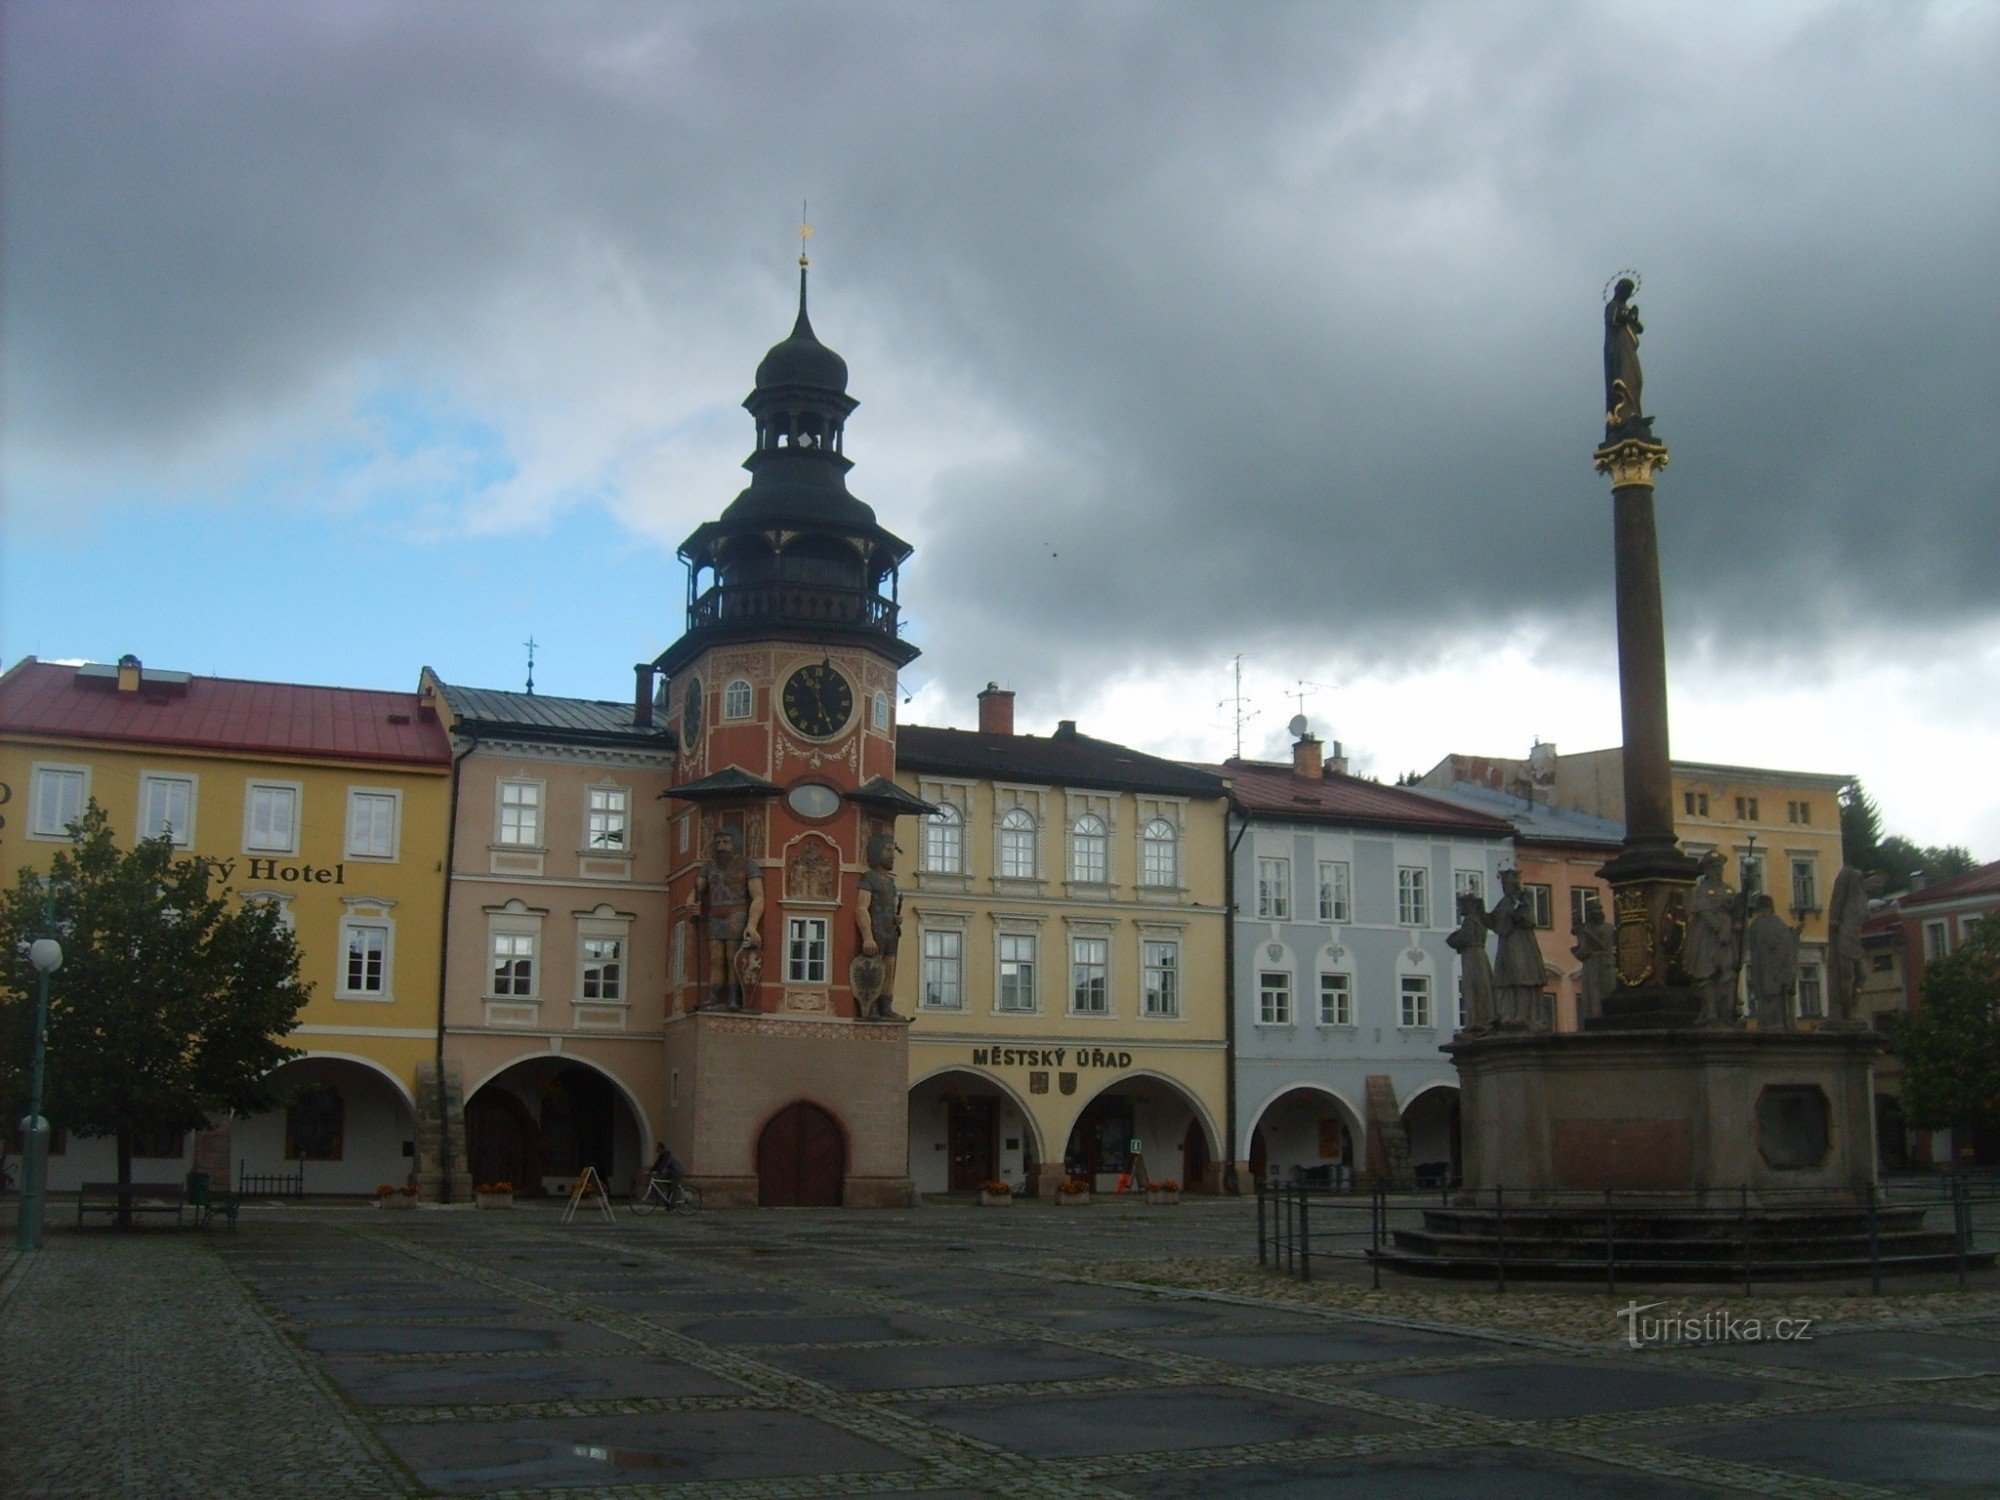 trg s stolpom mestne hiše in kužnim stebrom